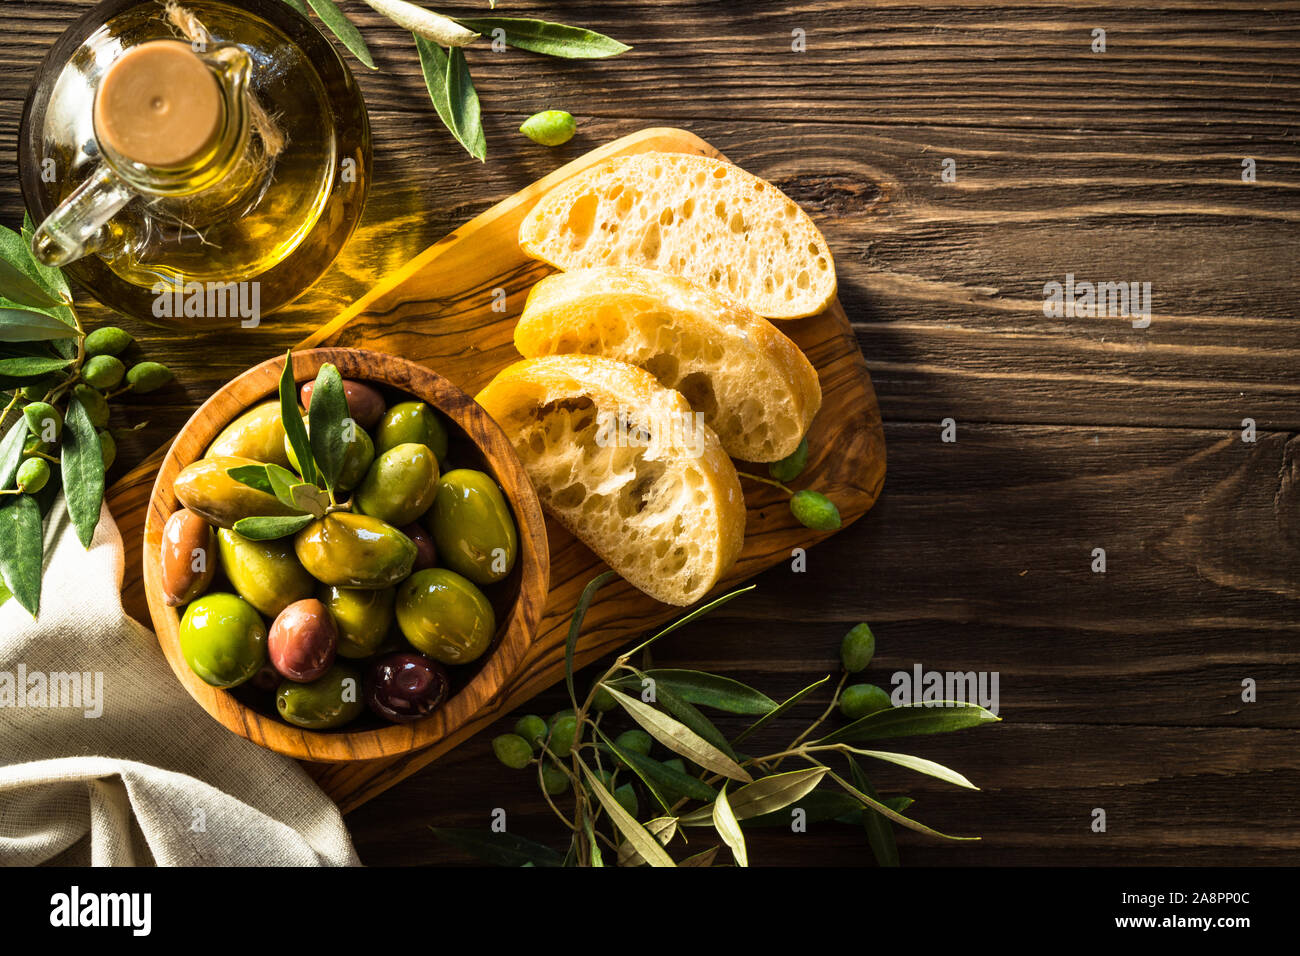 Olives, huile d'olive et pain ciabatta sur table en bois. Banque D'Images